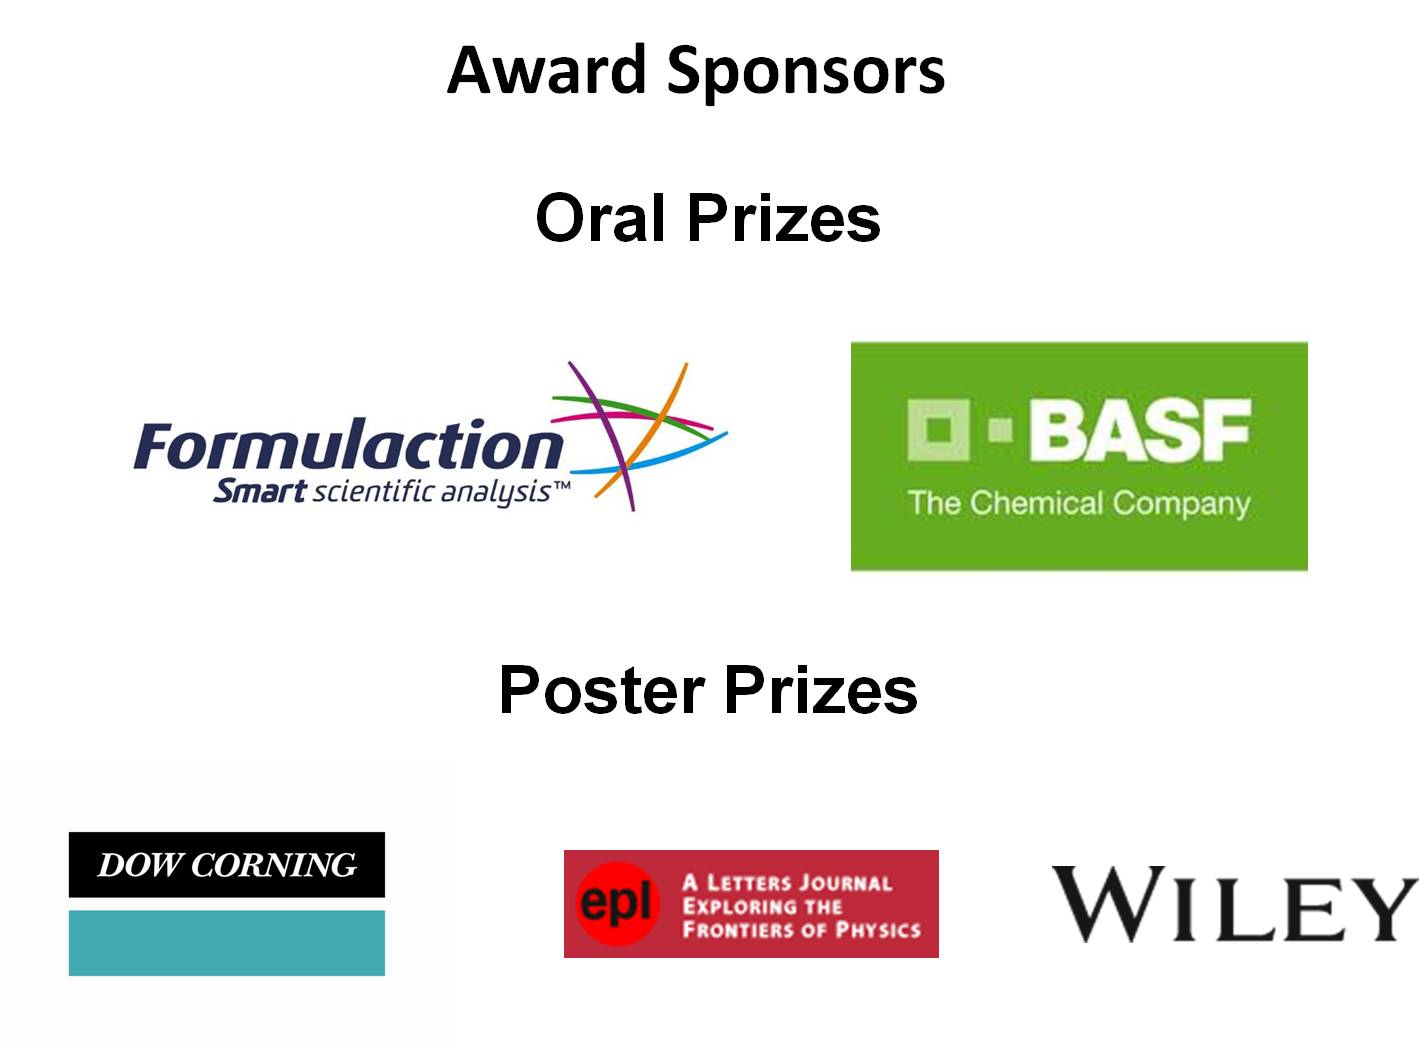 Award sponsors